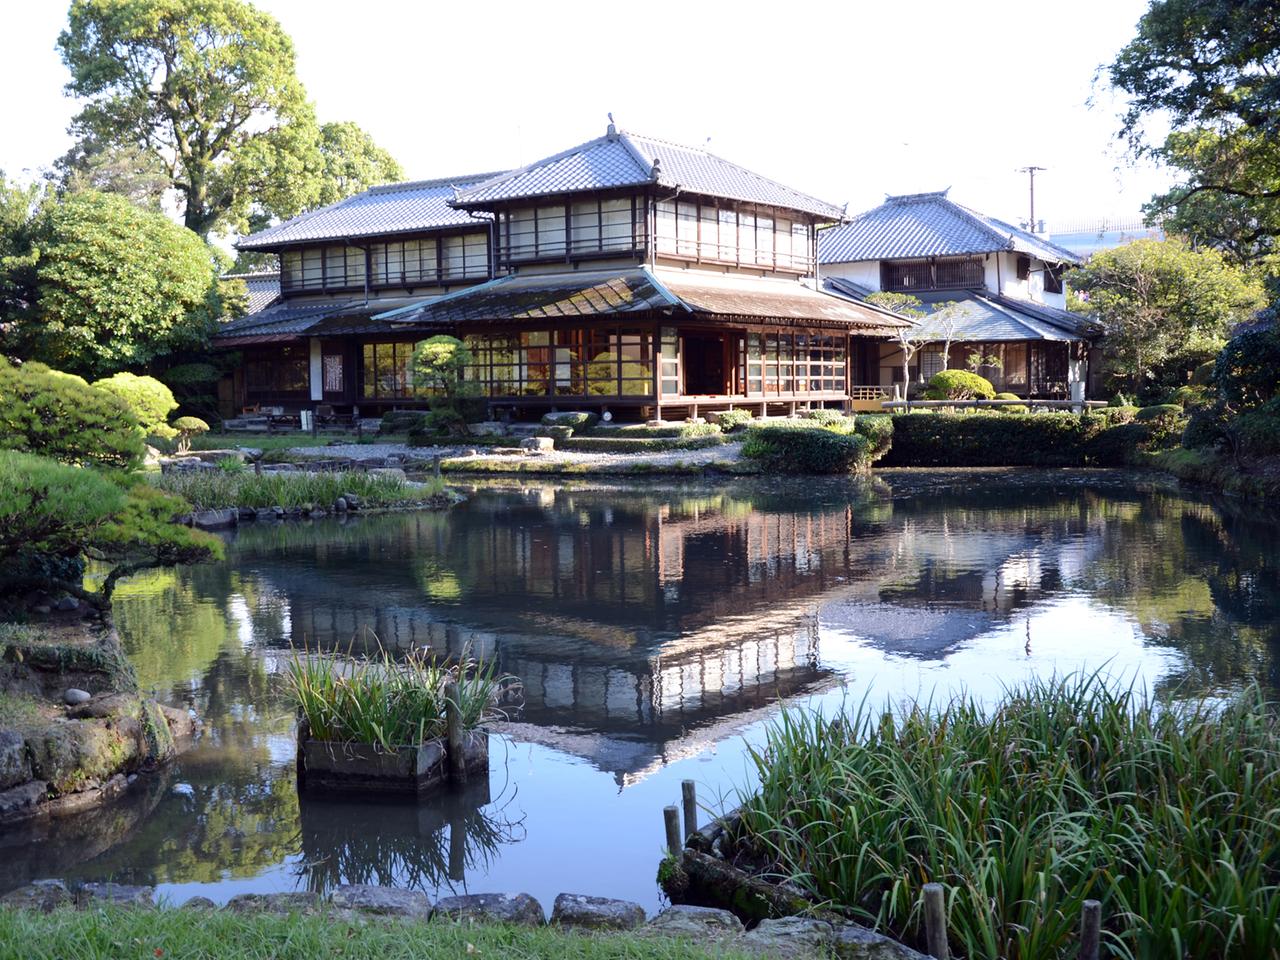 Ein Teehaus steht an einem Teich.